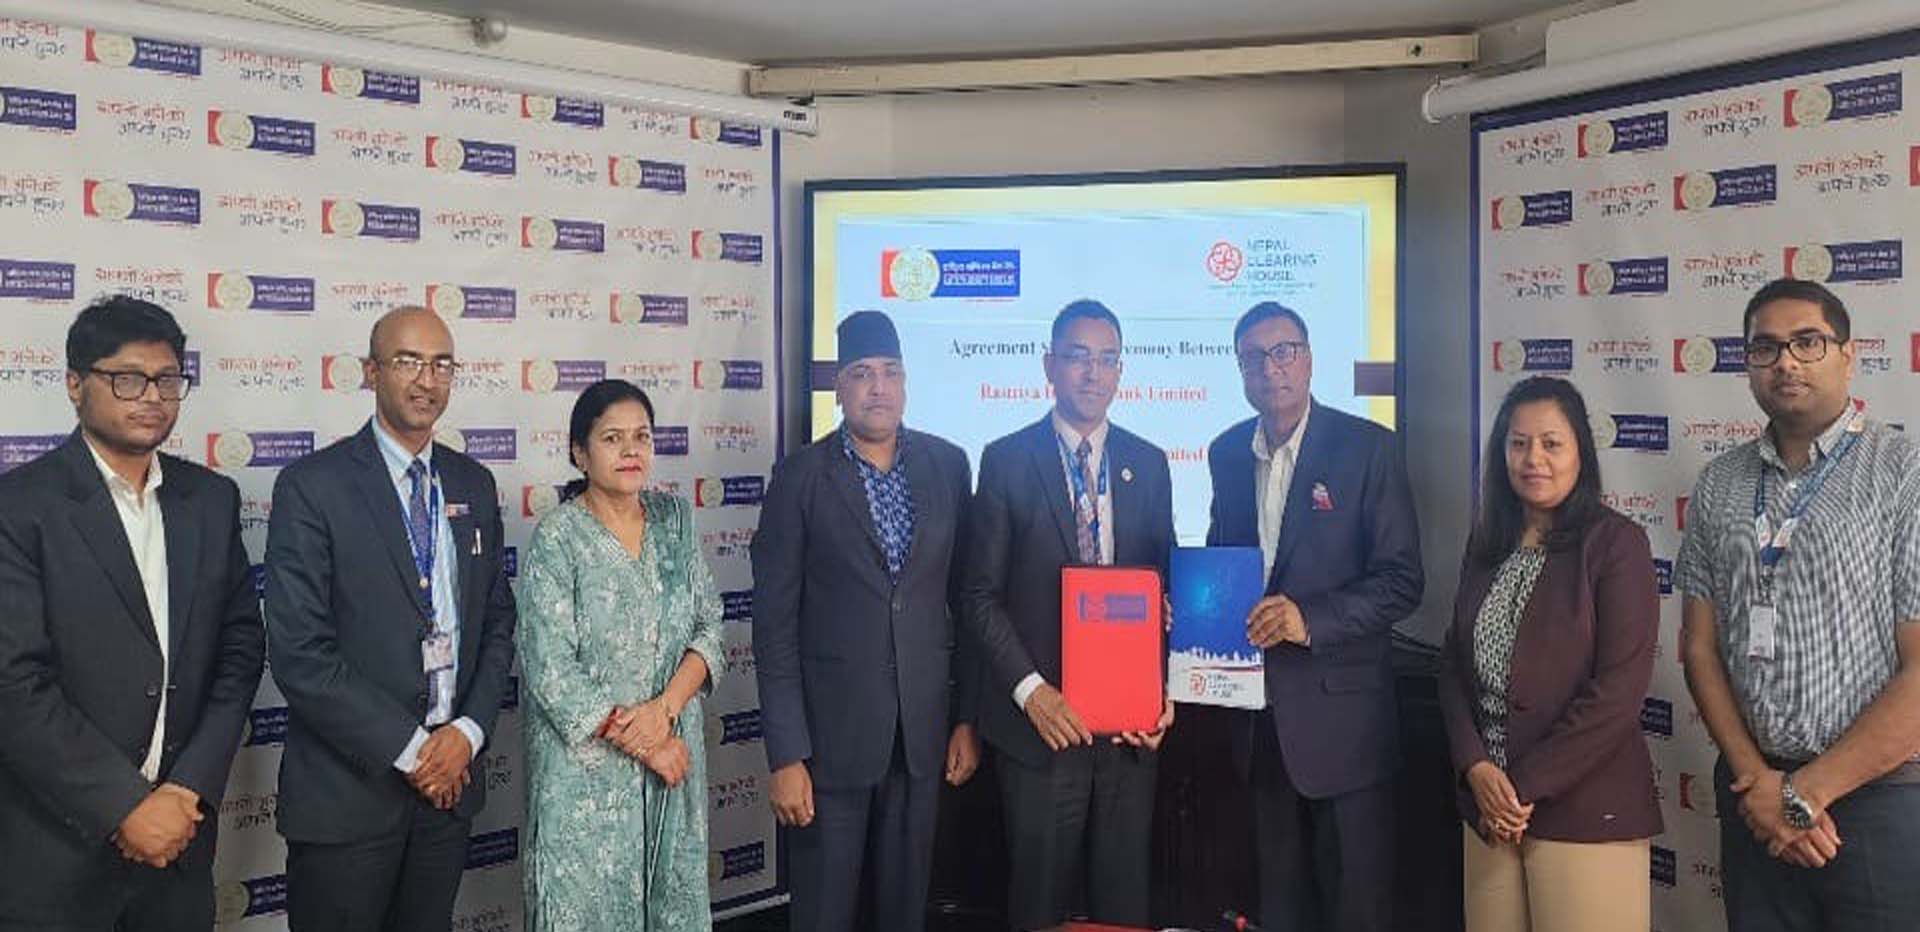 राष्ट्रिय वाणिज्य बैंक र नेपाल क्लियरिङ हाउसबीच अन्तरदेशीय कारोबार सम्झौता